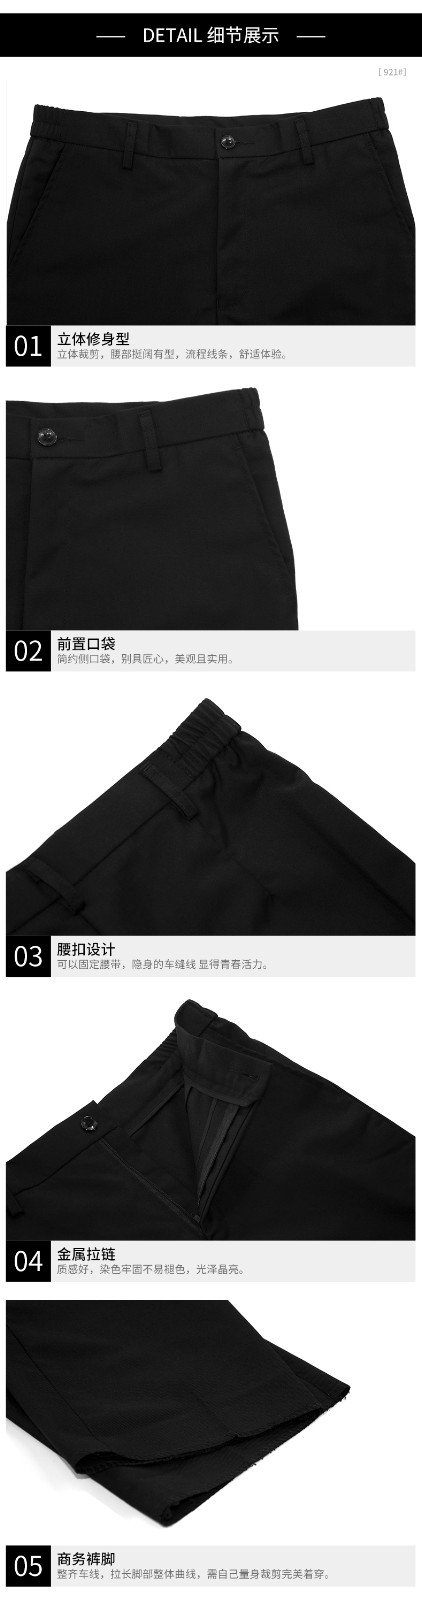 男女西裤 男121-1  女921-1(图10)